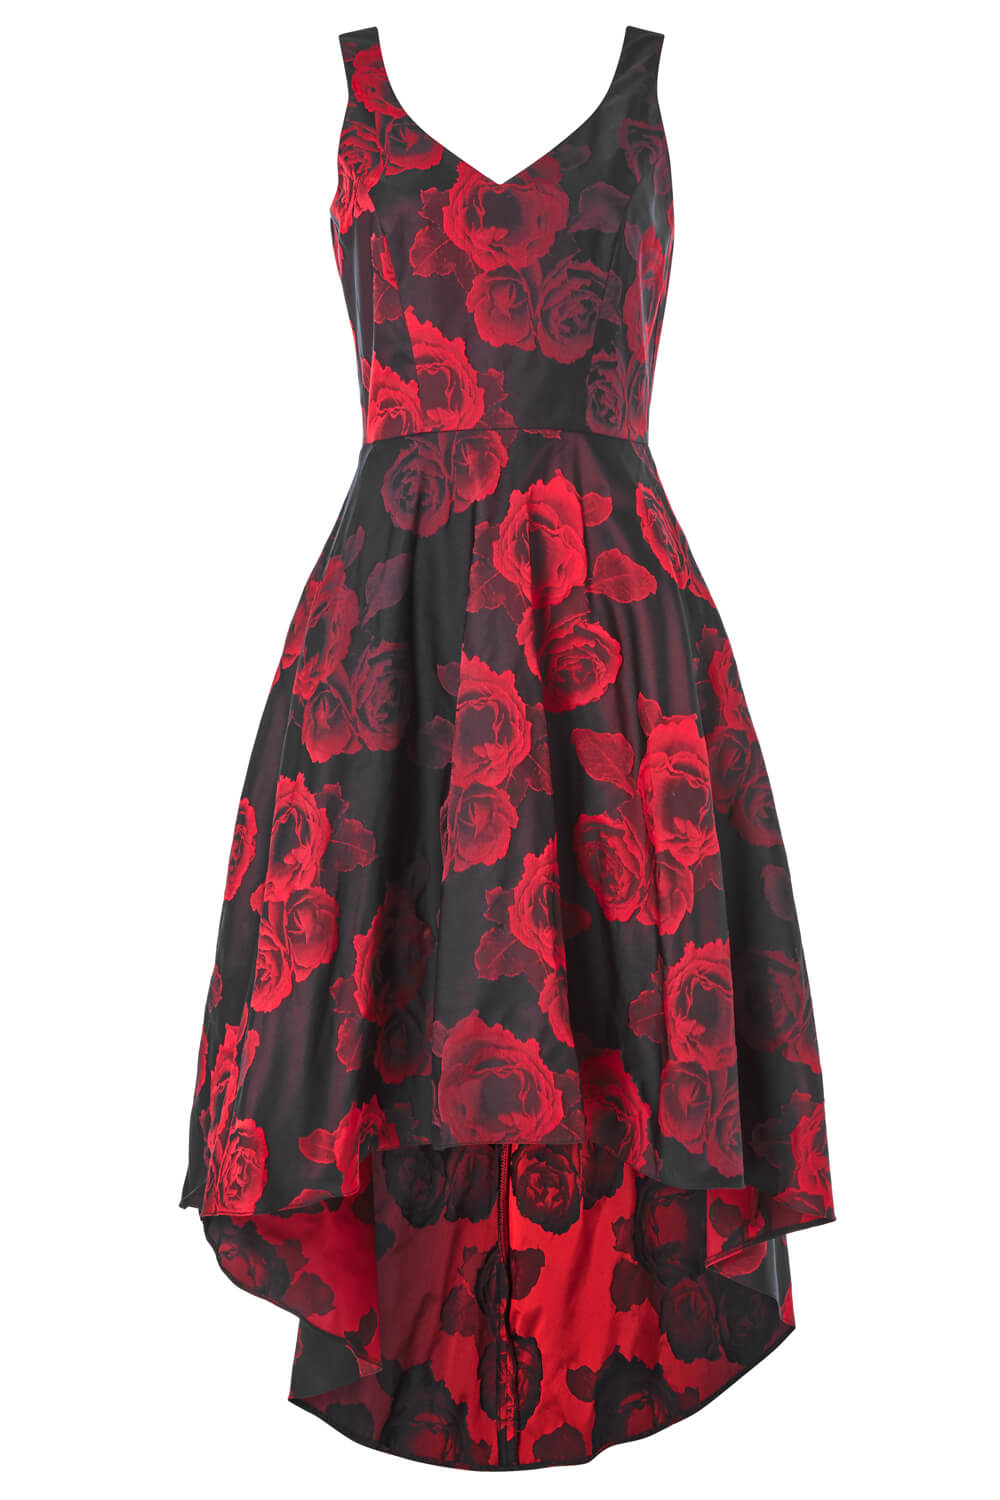 Red Rose Print Dipped Hem Dress, Image 4 of 4